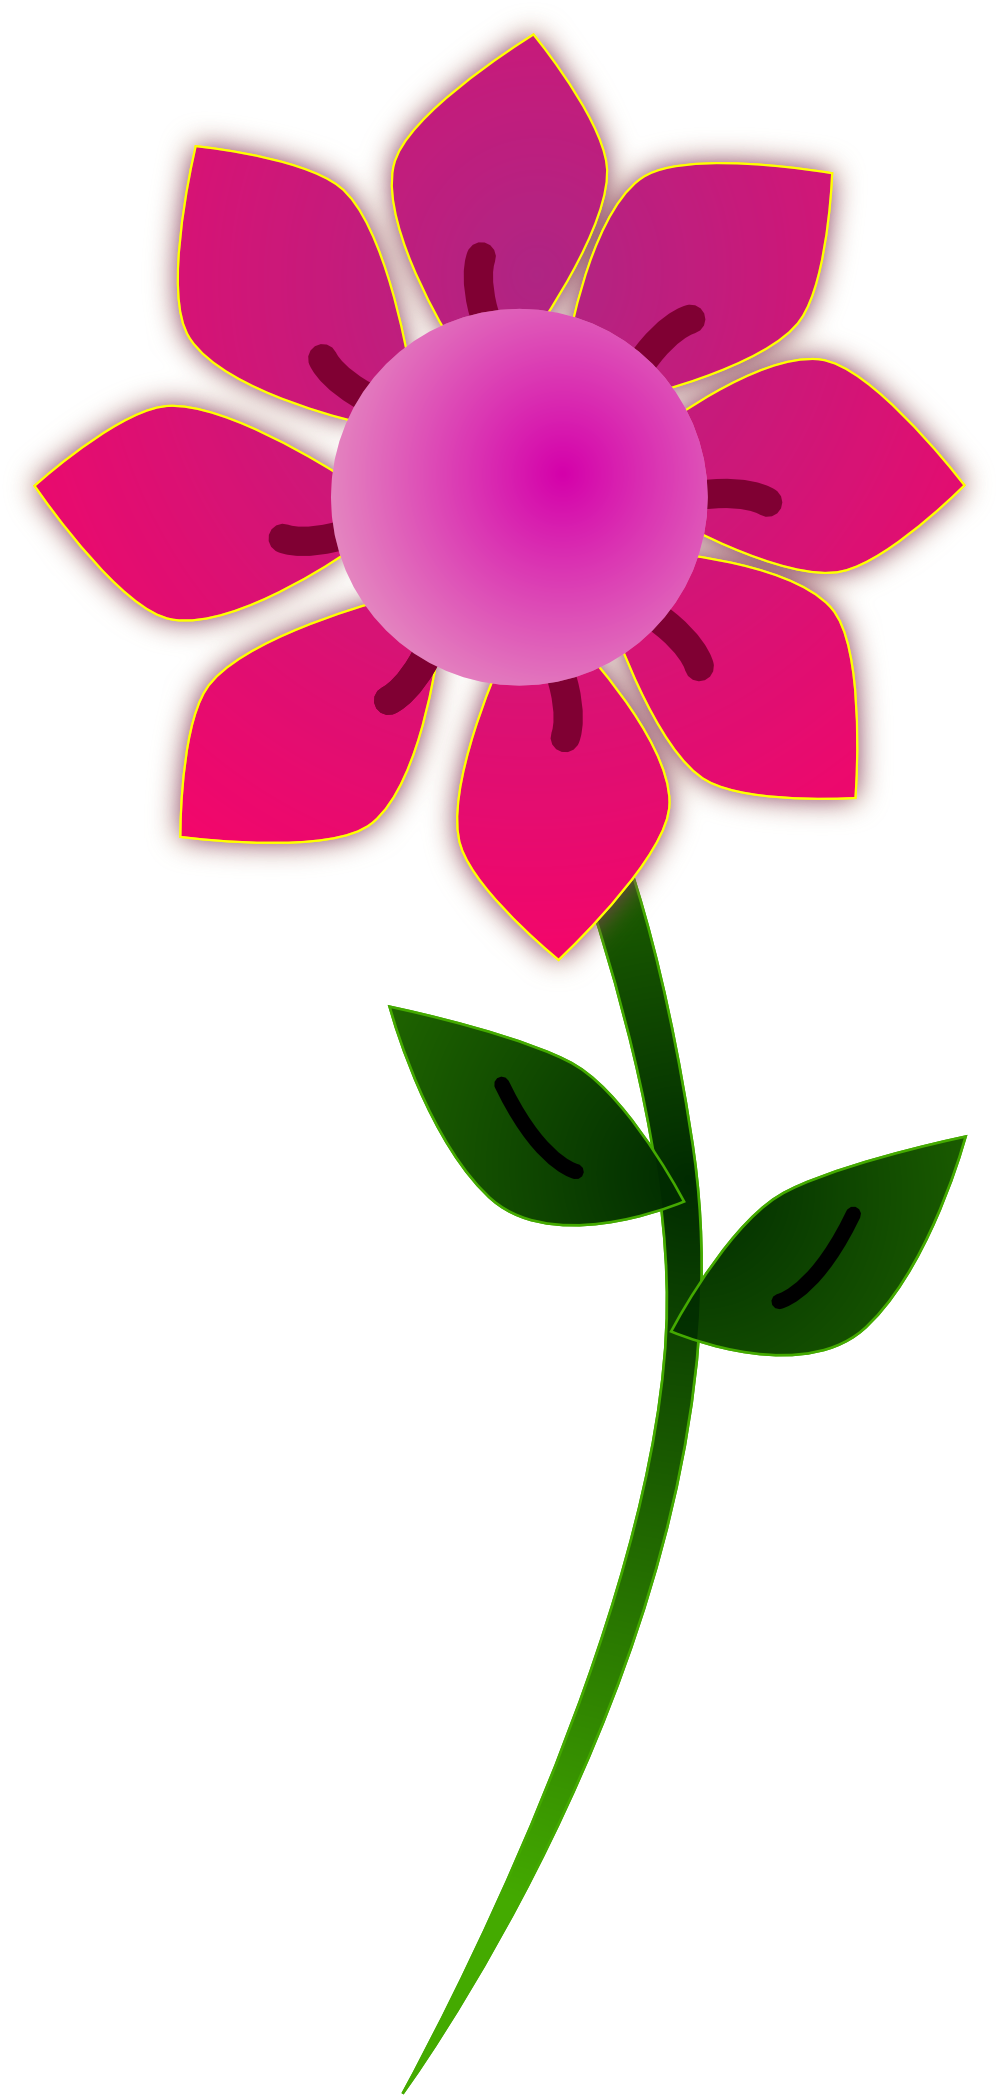 Flowers For > Flowers Clip Art